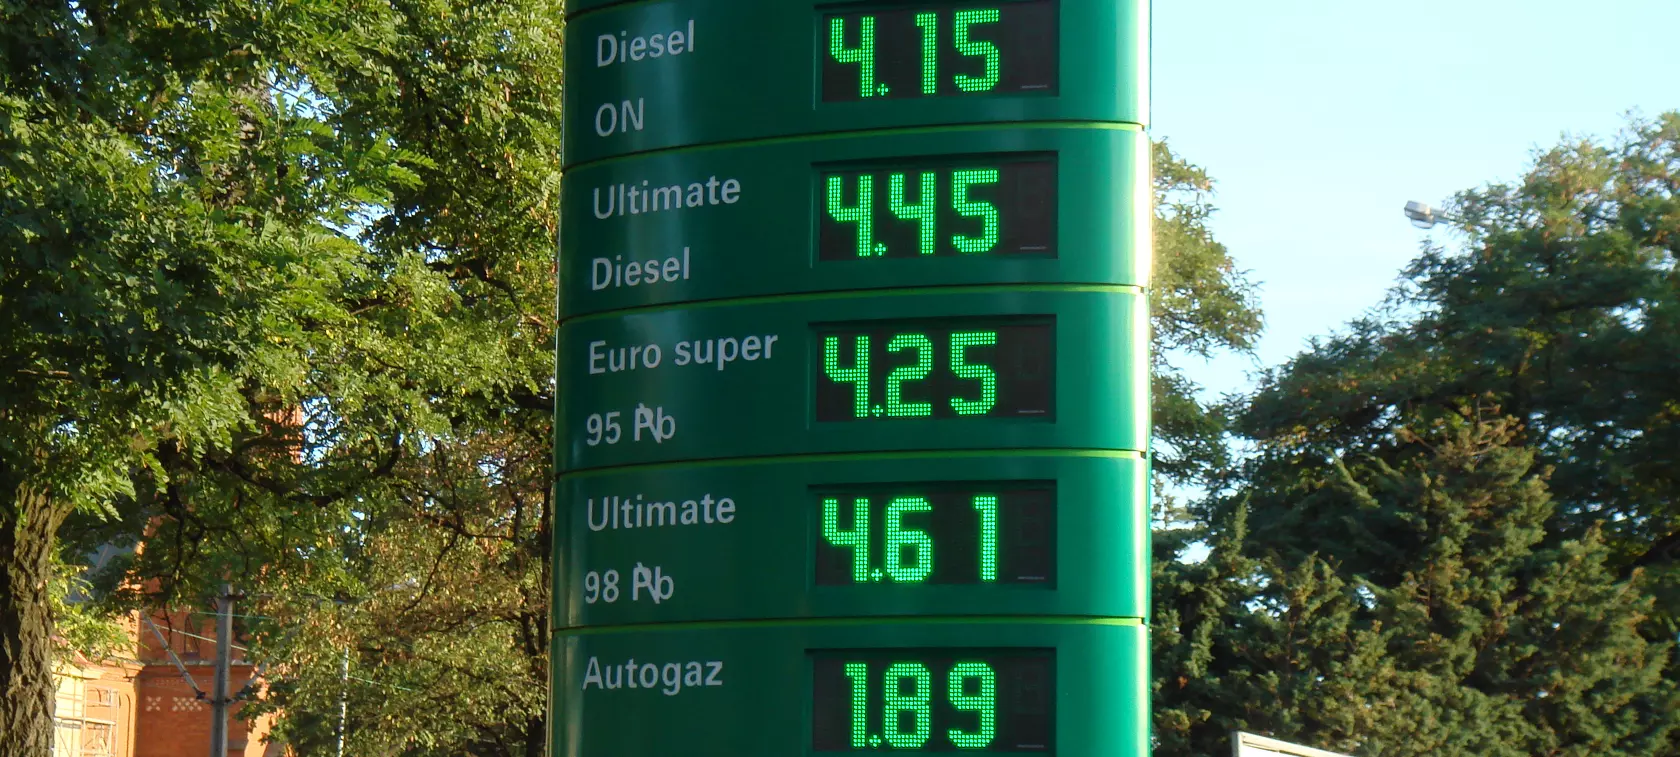 Cena autogazu: 2 zł/l tuż?